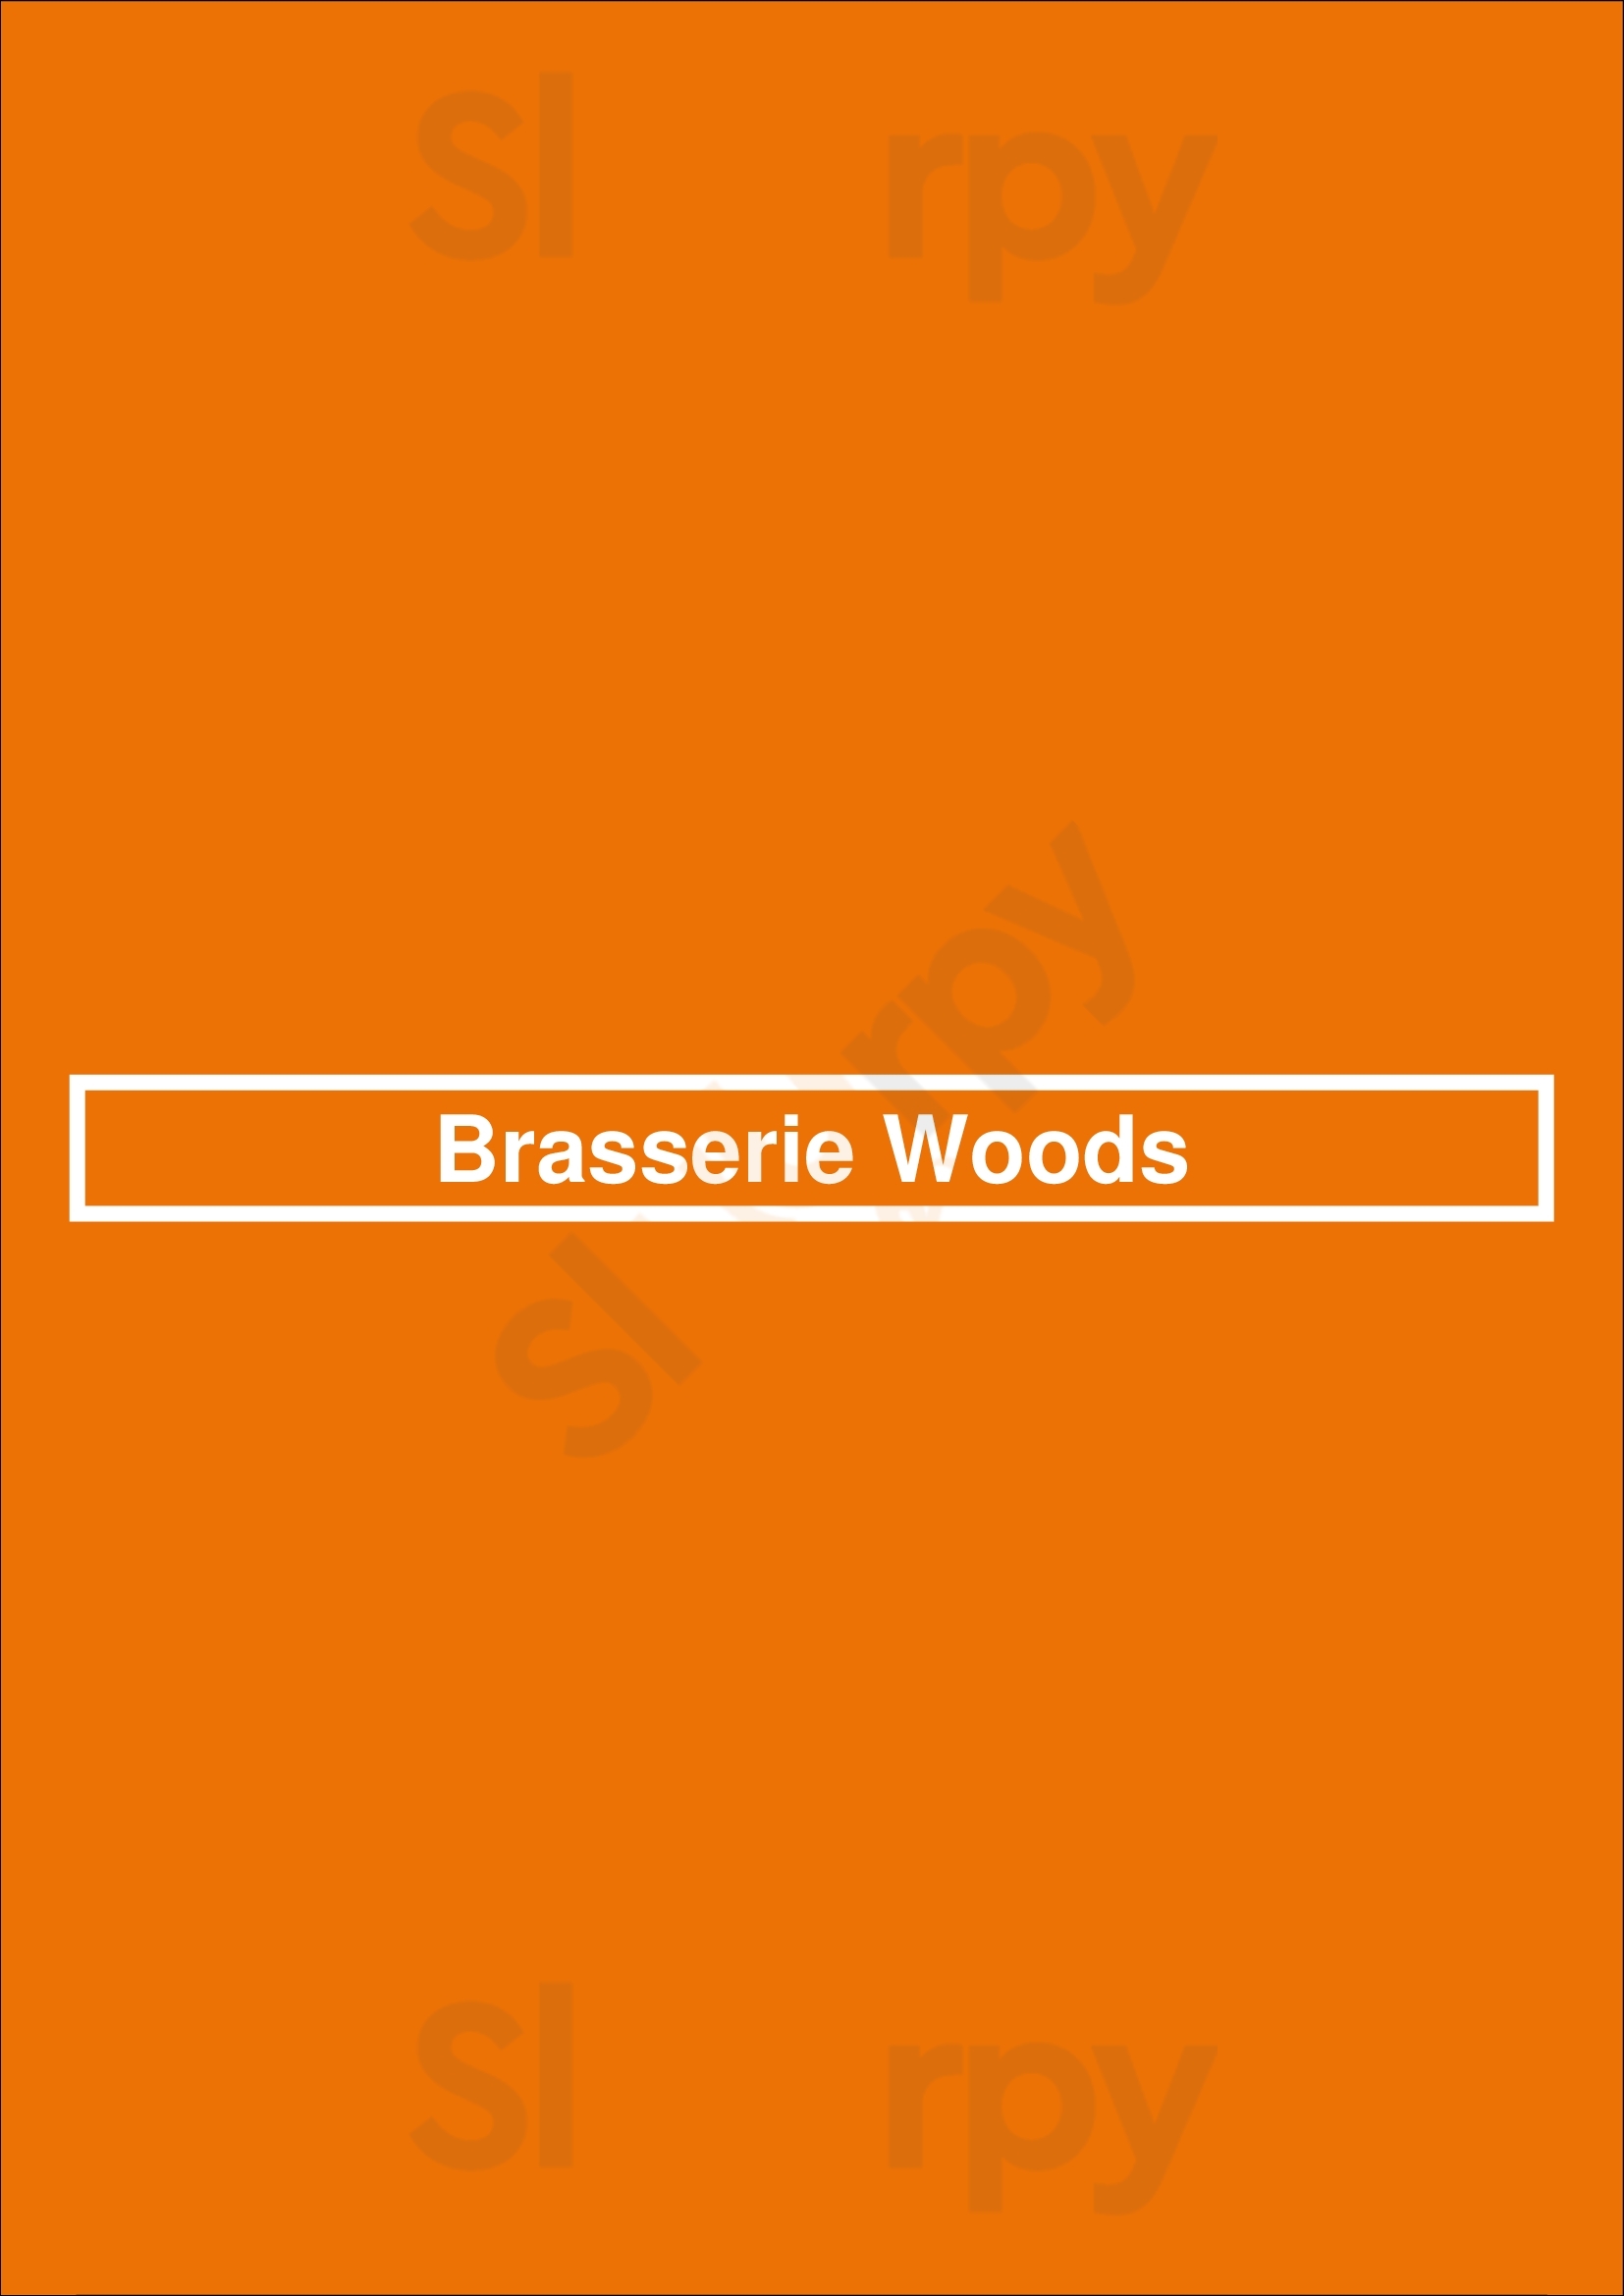 Brasserie Woods Oosterhout Menu - 1